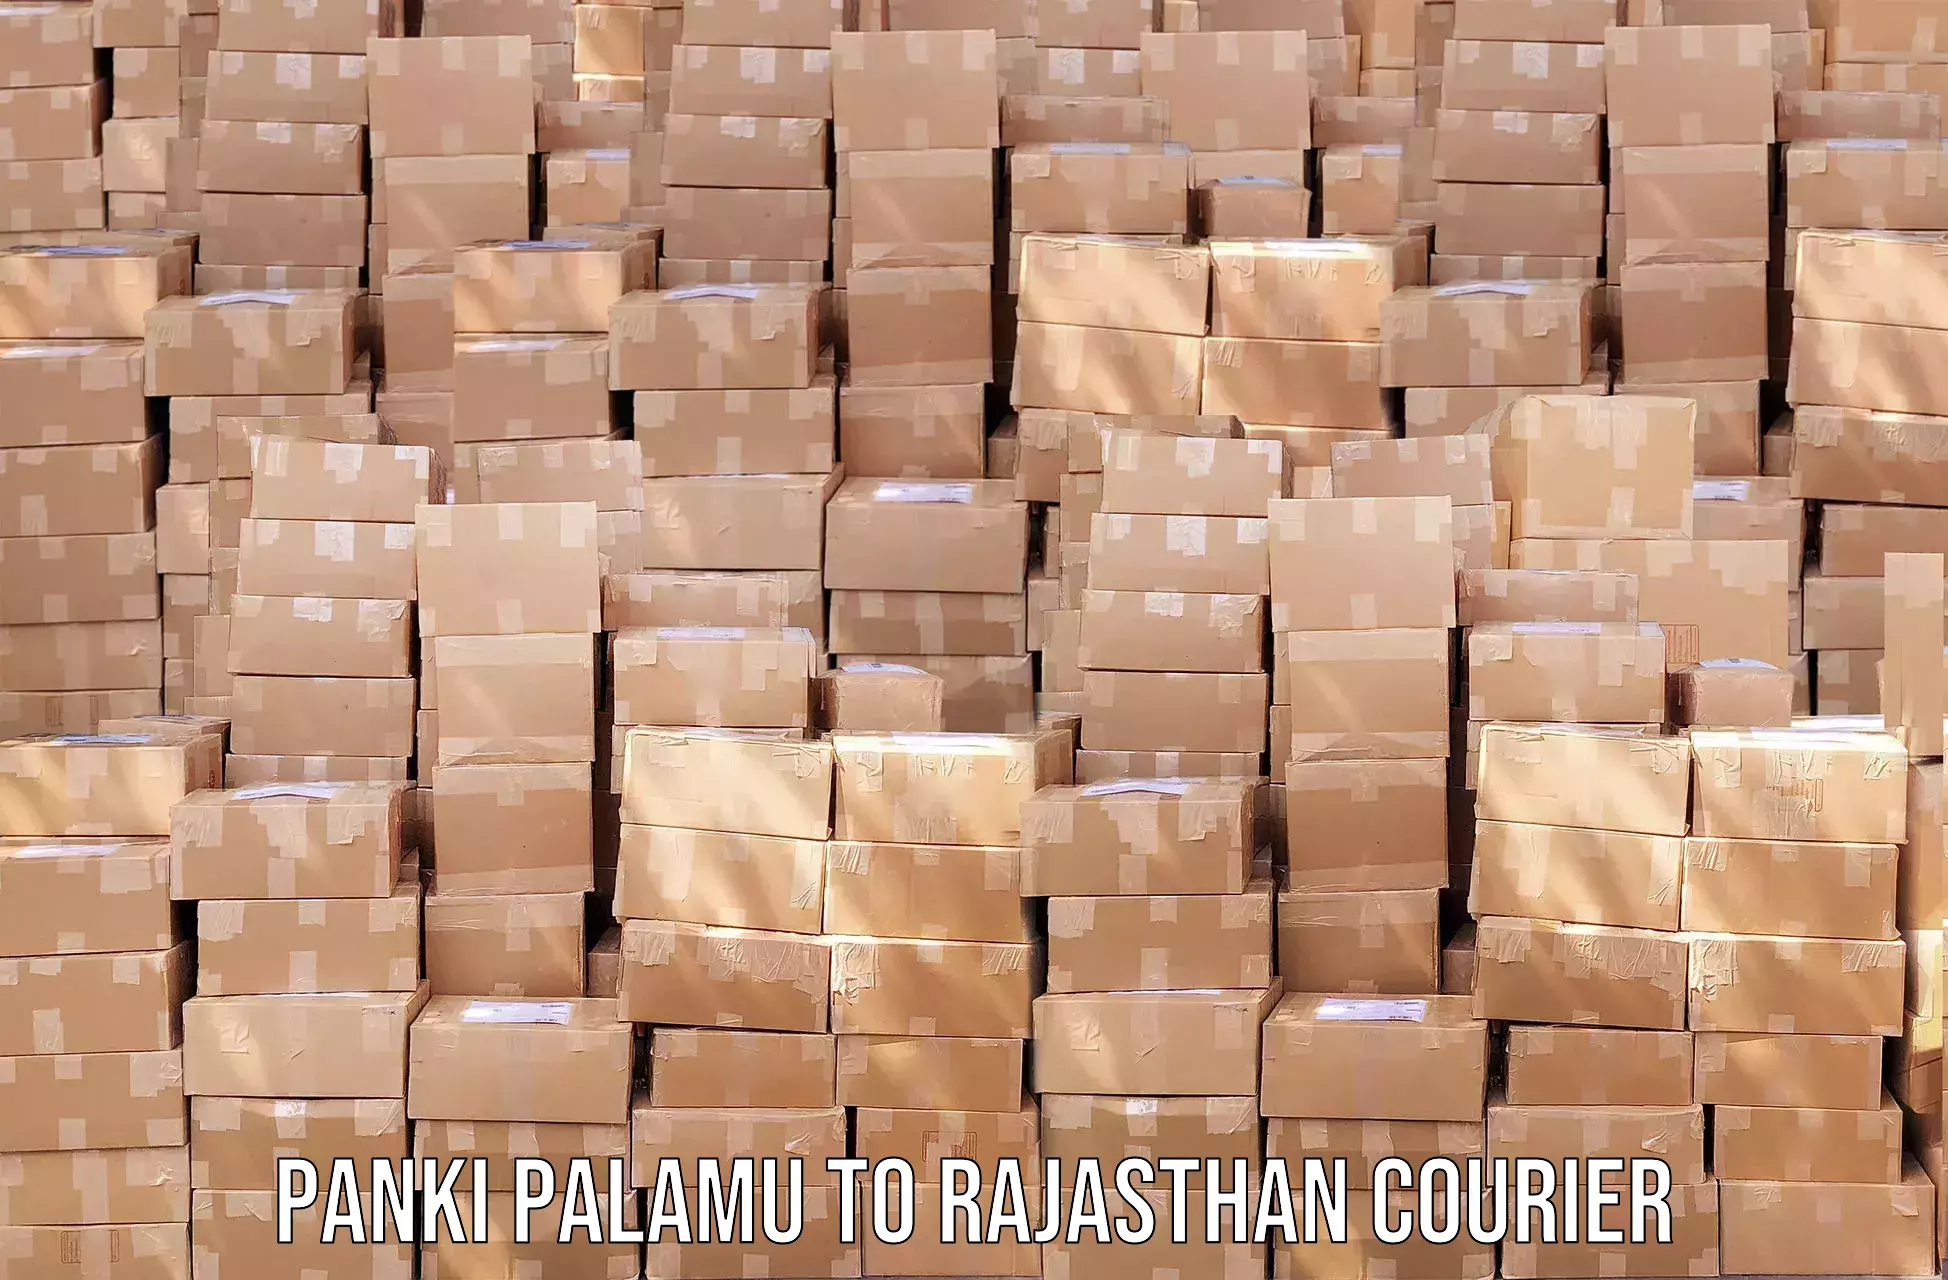 Efficient cargo services Panki Palamu to Rajasthan